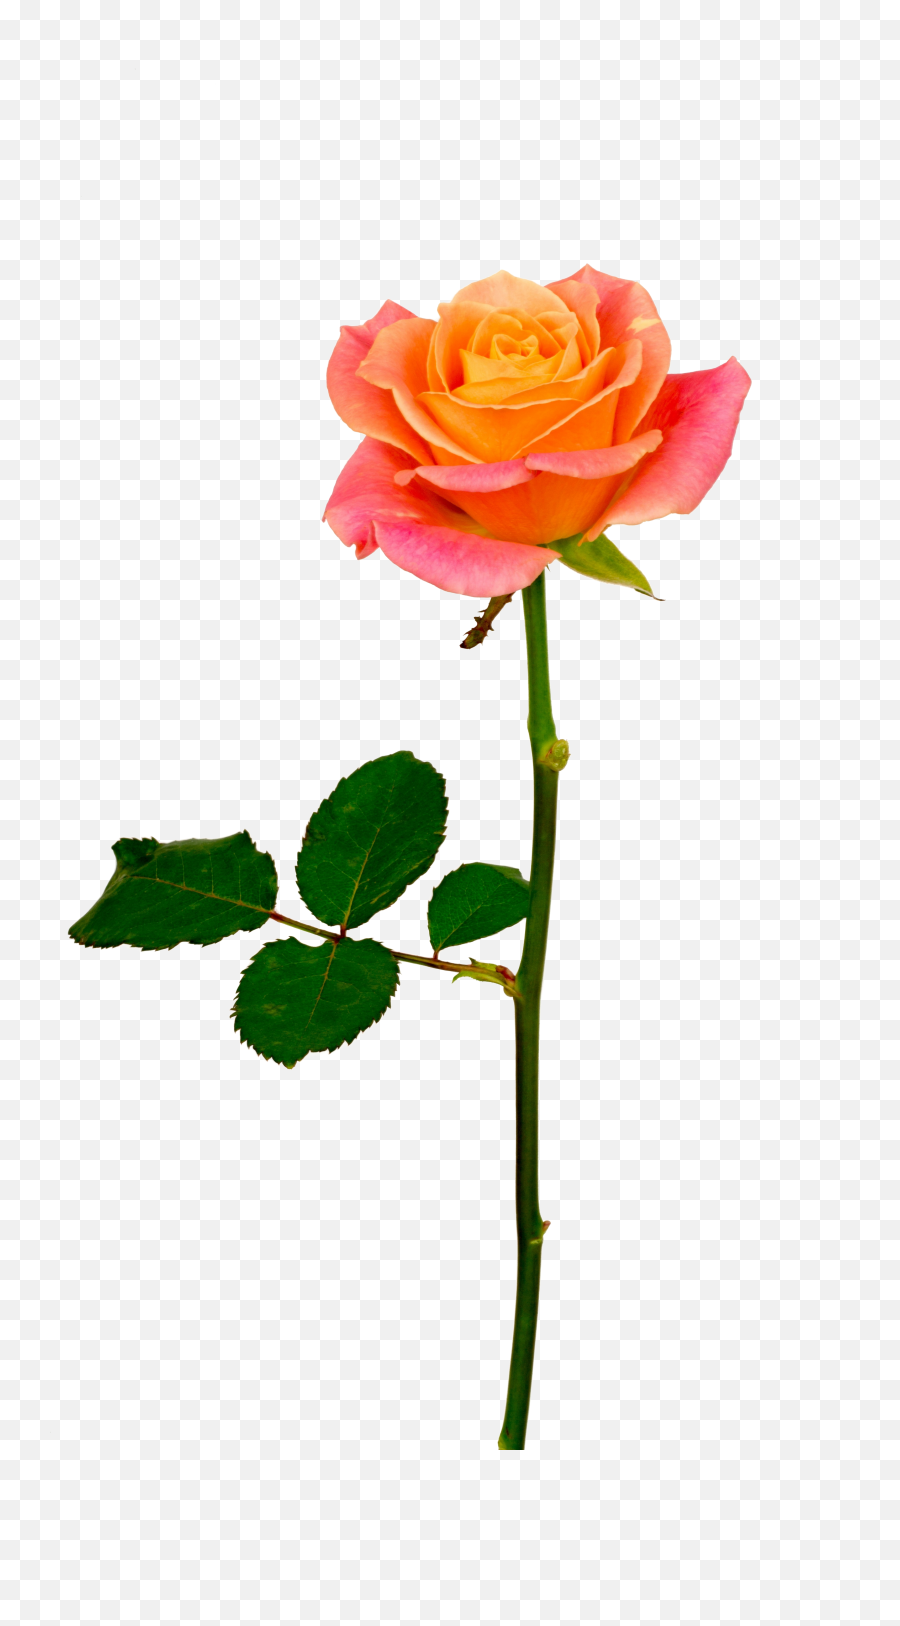 Background V50 Png 600x736 S Resolution Orange Roses - Orange Rose With Stem Png,Orange Flowers Png